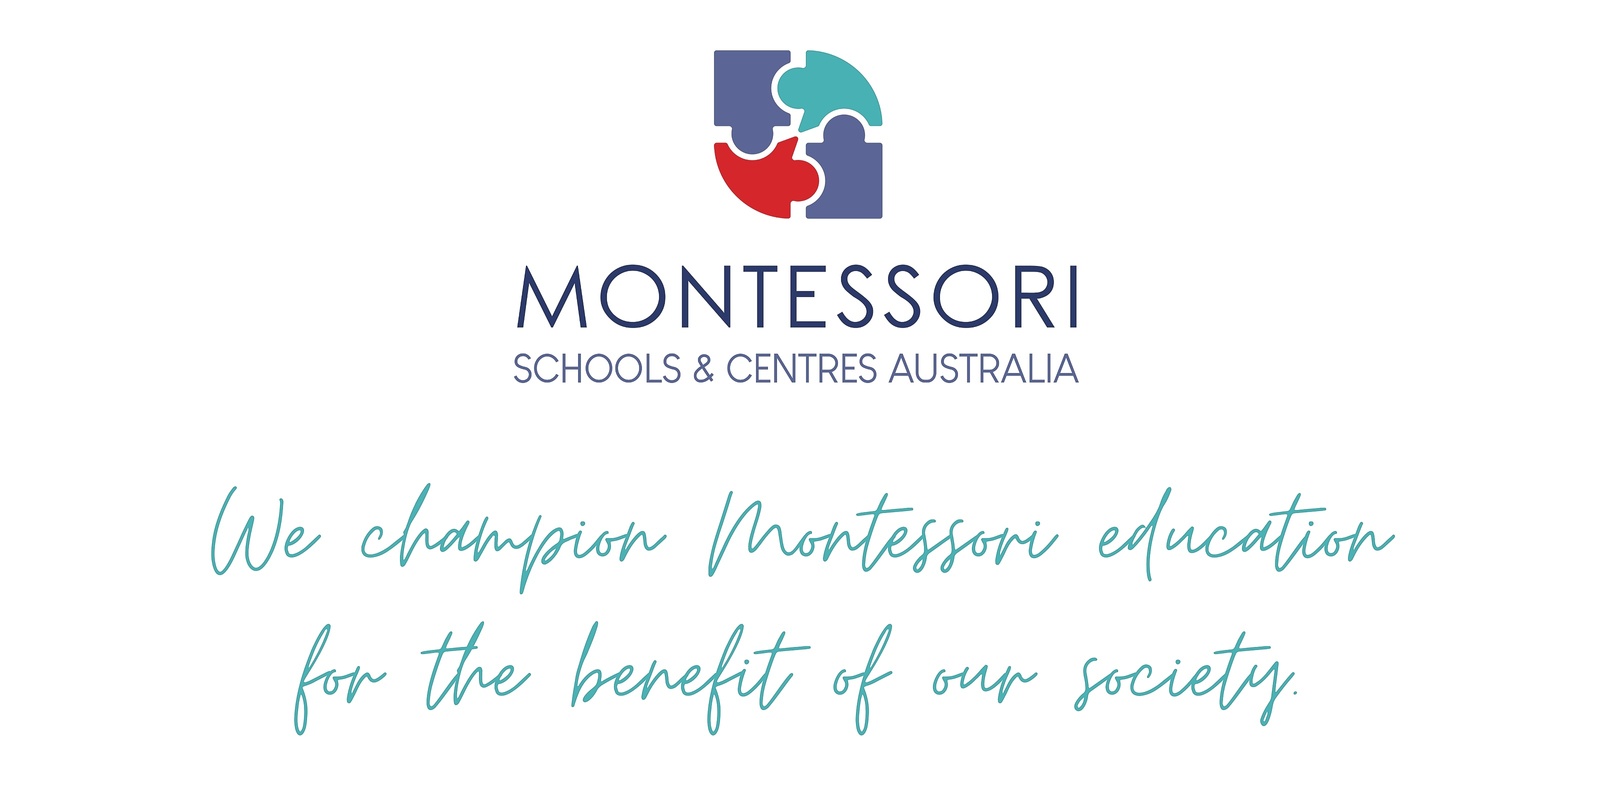 MSCA – Montessori Schools & Centres Australia's banner